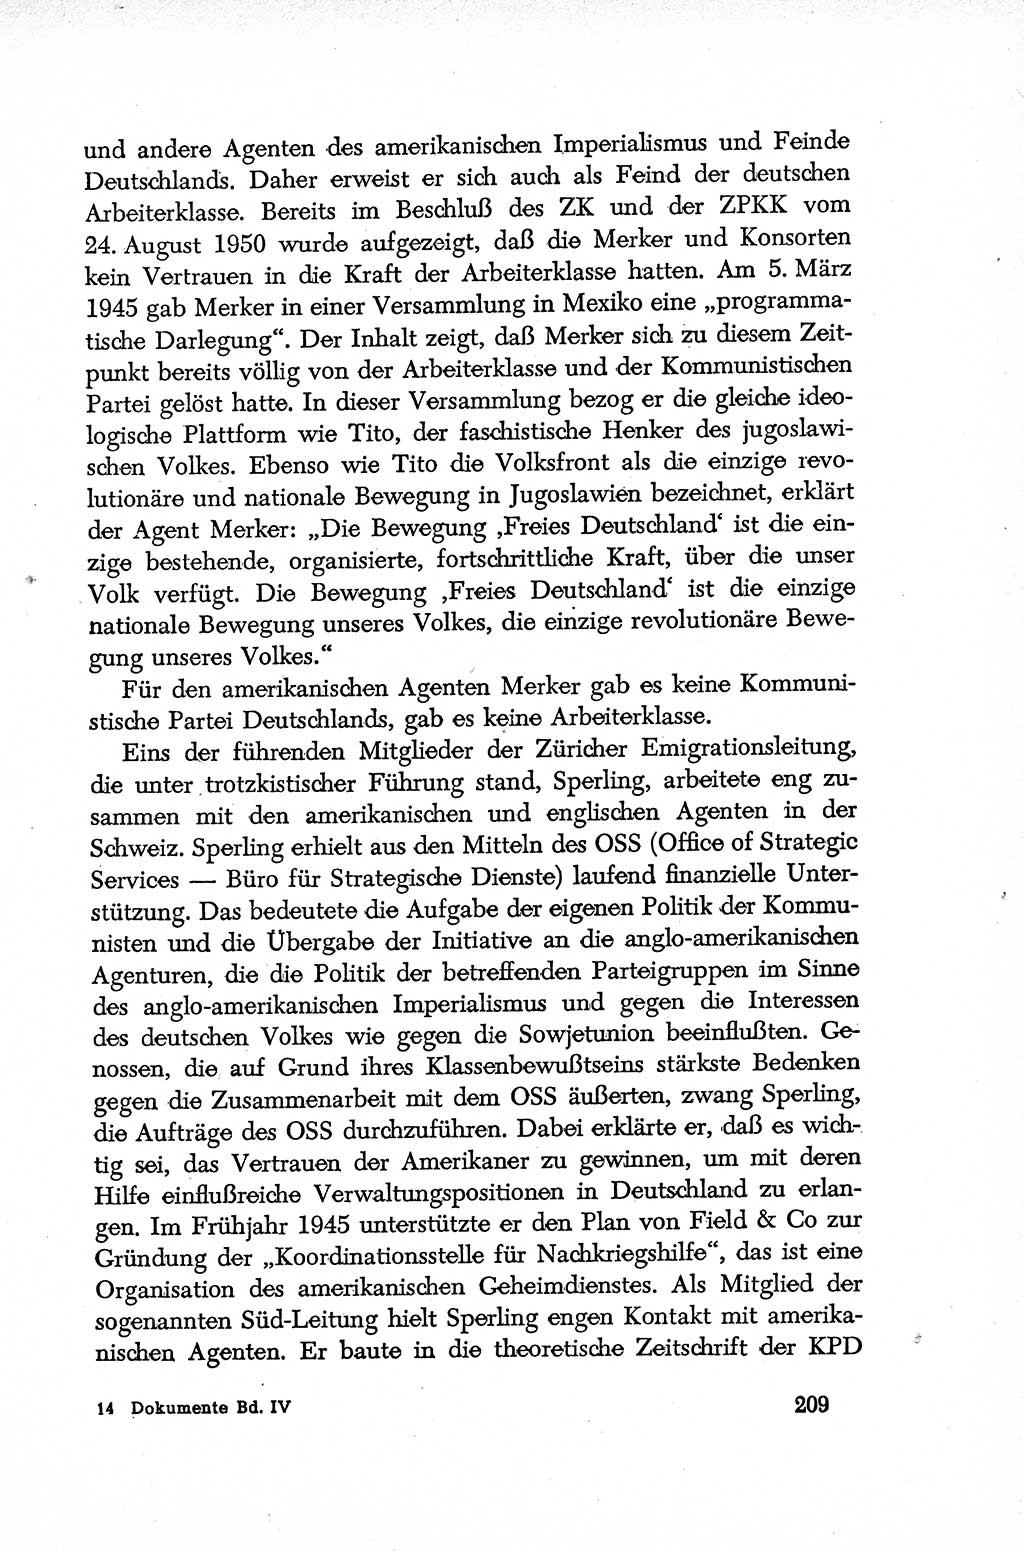 Dokumente der Sozialistischen Einheitspartei Deutschlands (SED) [Deutsche Demokratische Republik (DDR)] 1952-1953, Seite 209 (Dok. SED DDR 1952-1953, S. 209)